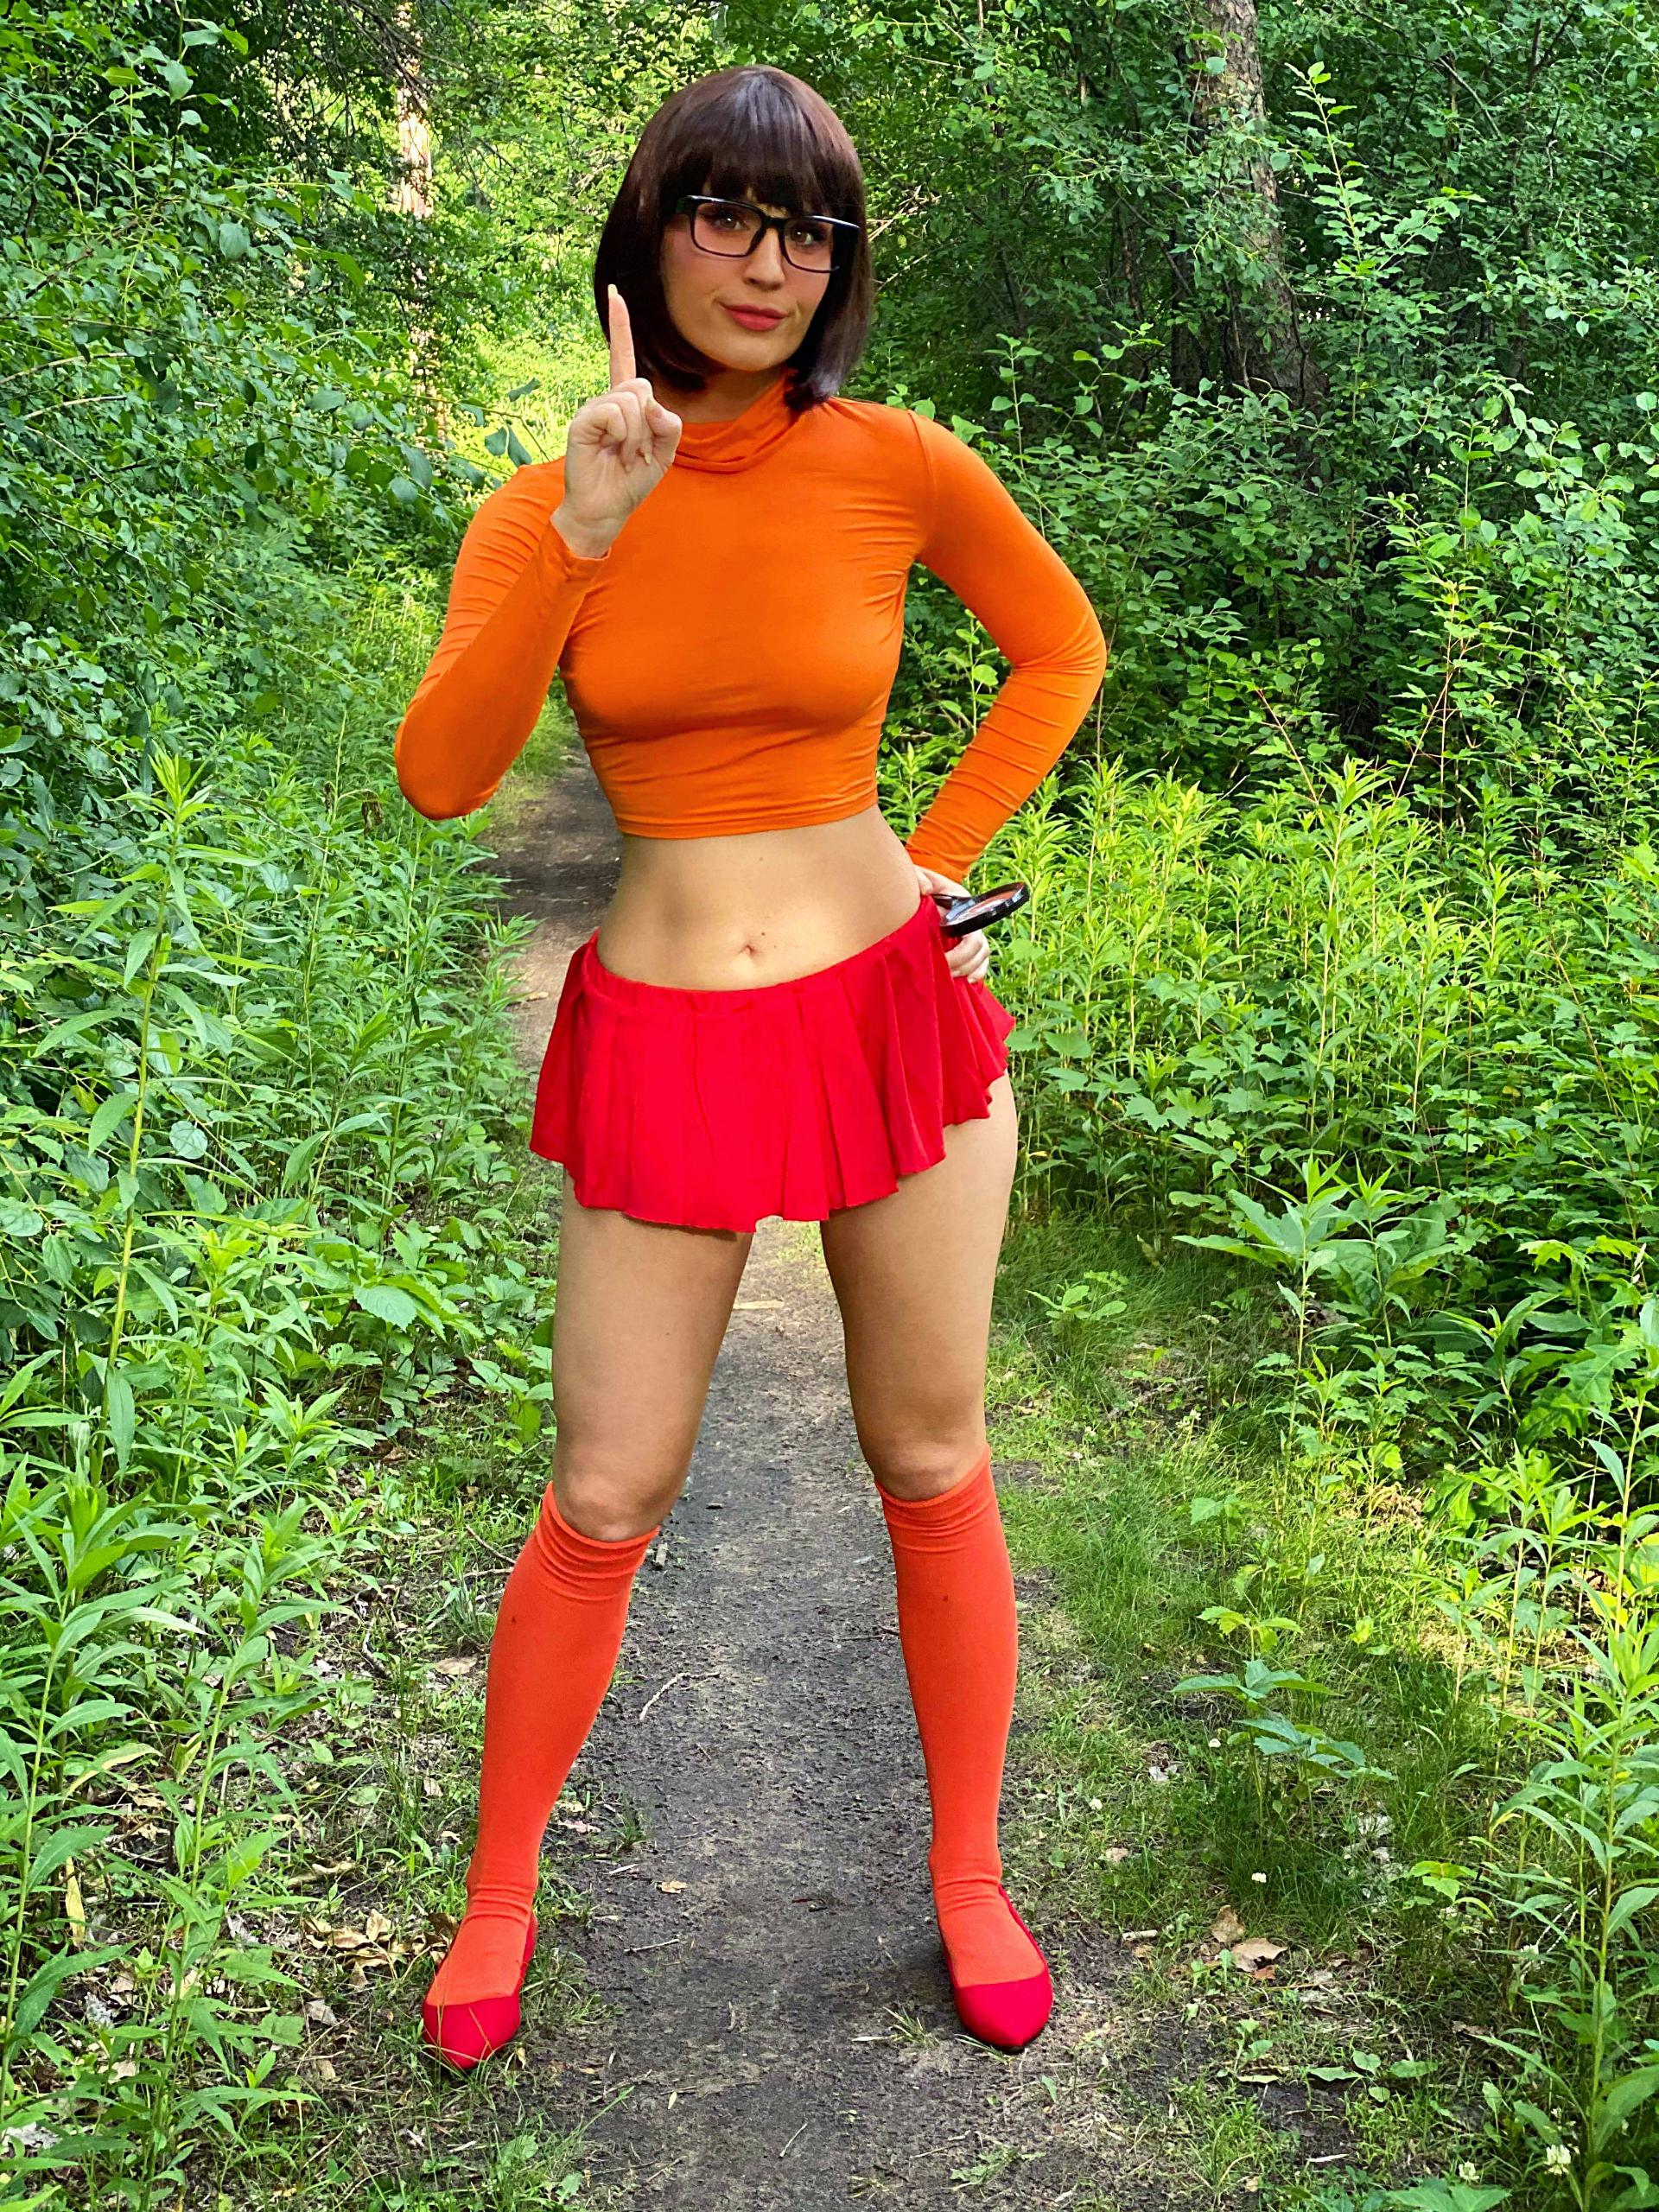 Mademlush As Velma Dinkley Jinkies 🧡 Scrolller